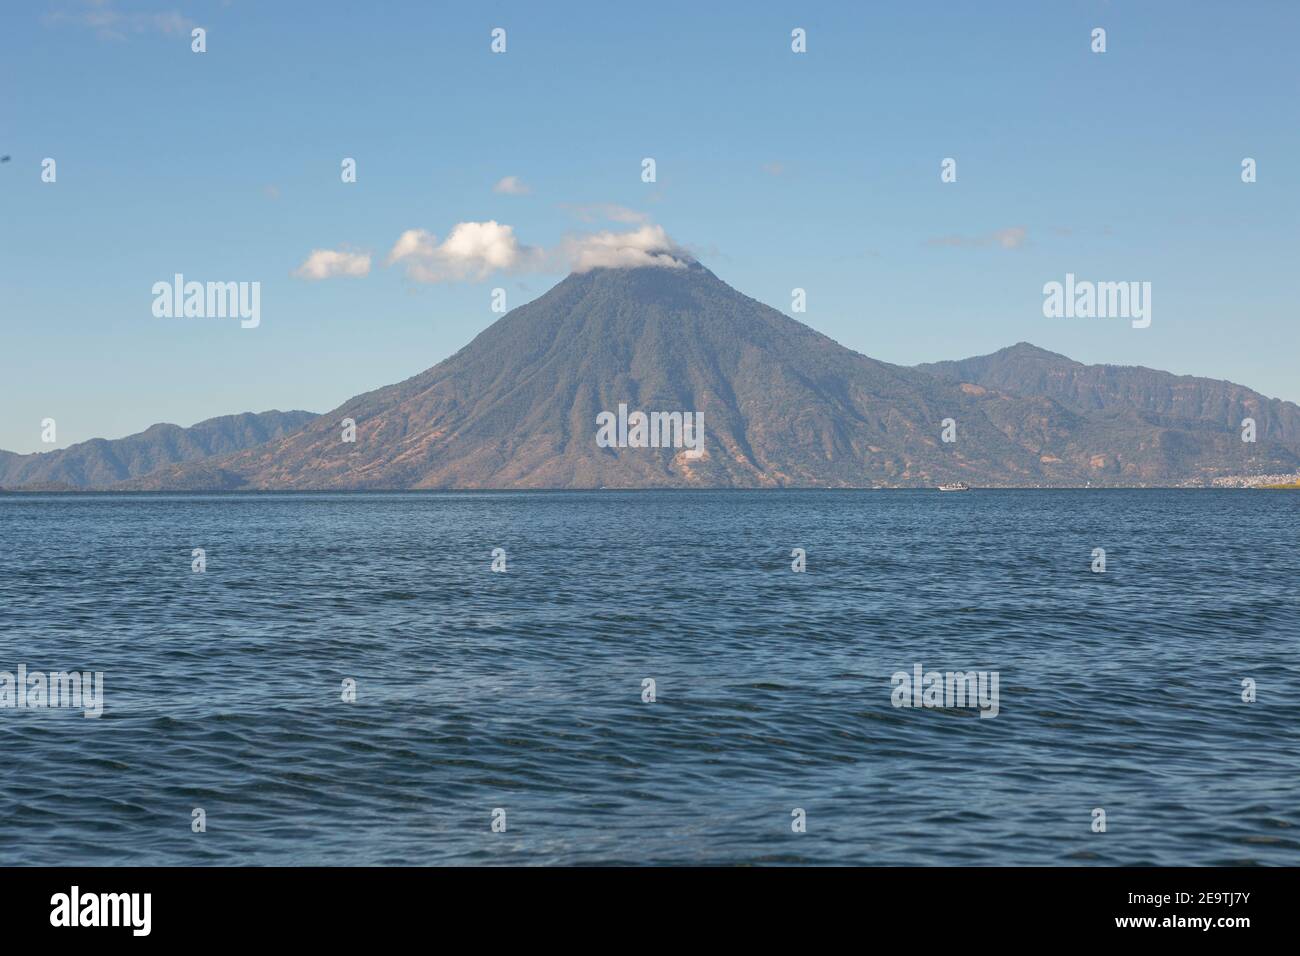 Lake Atitlan in Guatemala. Stock Photo